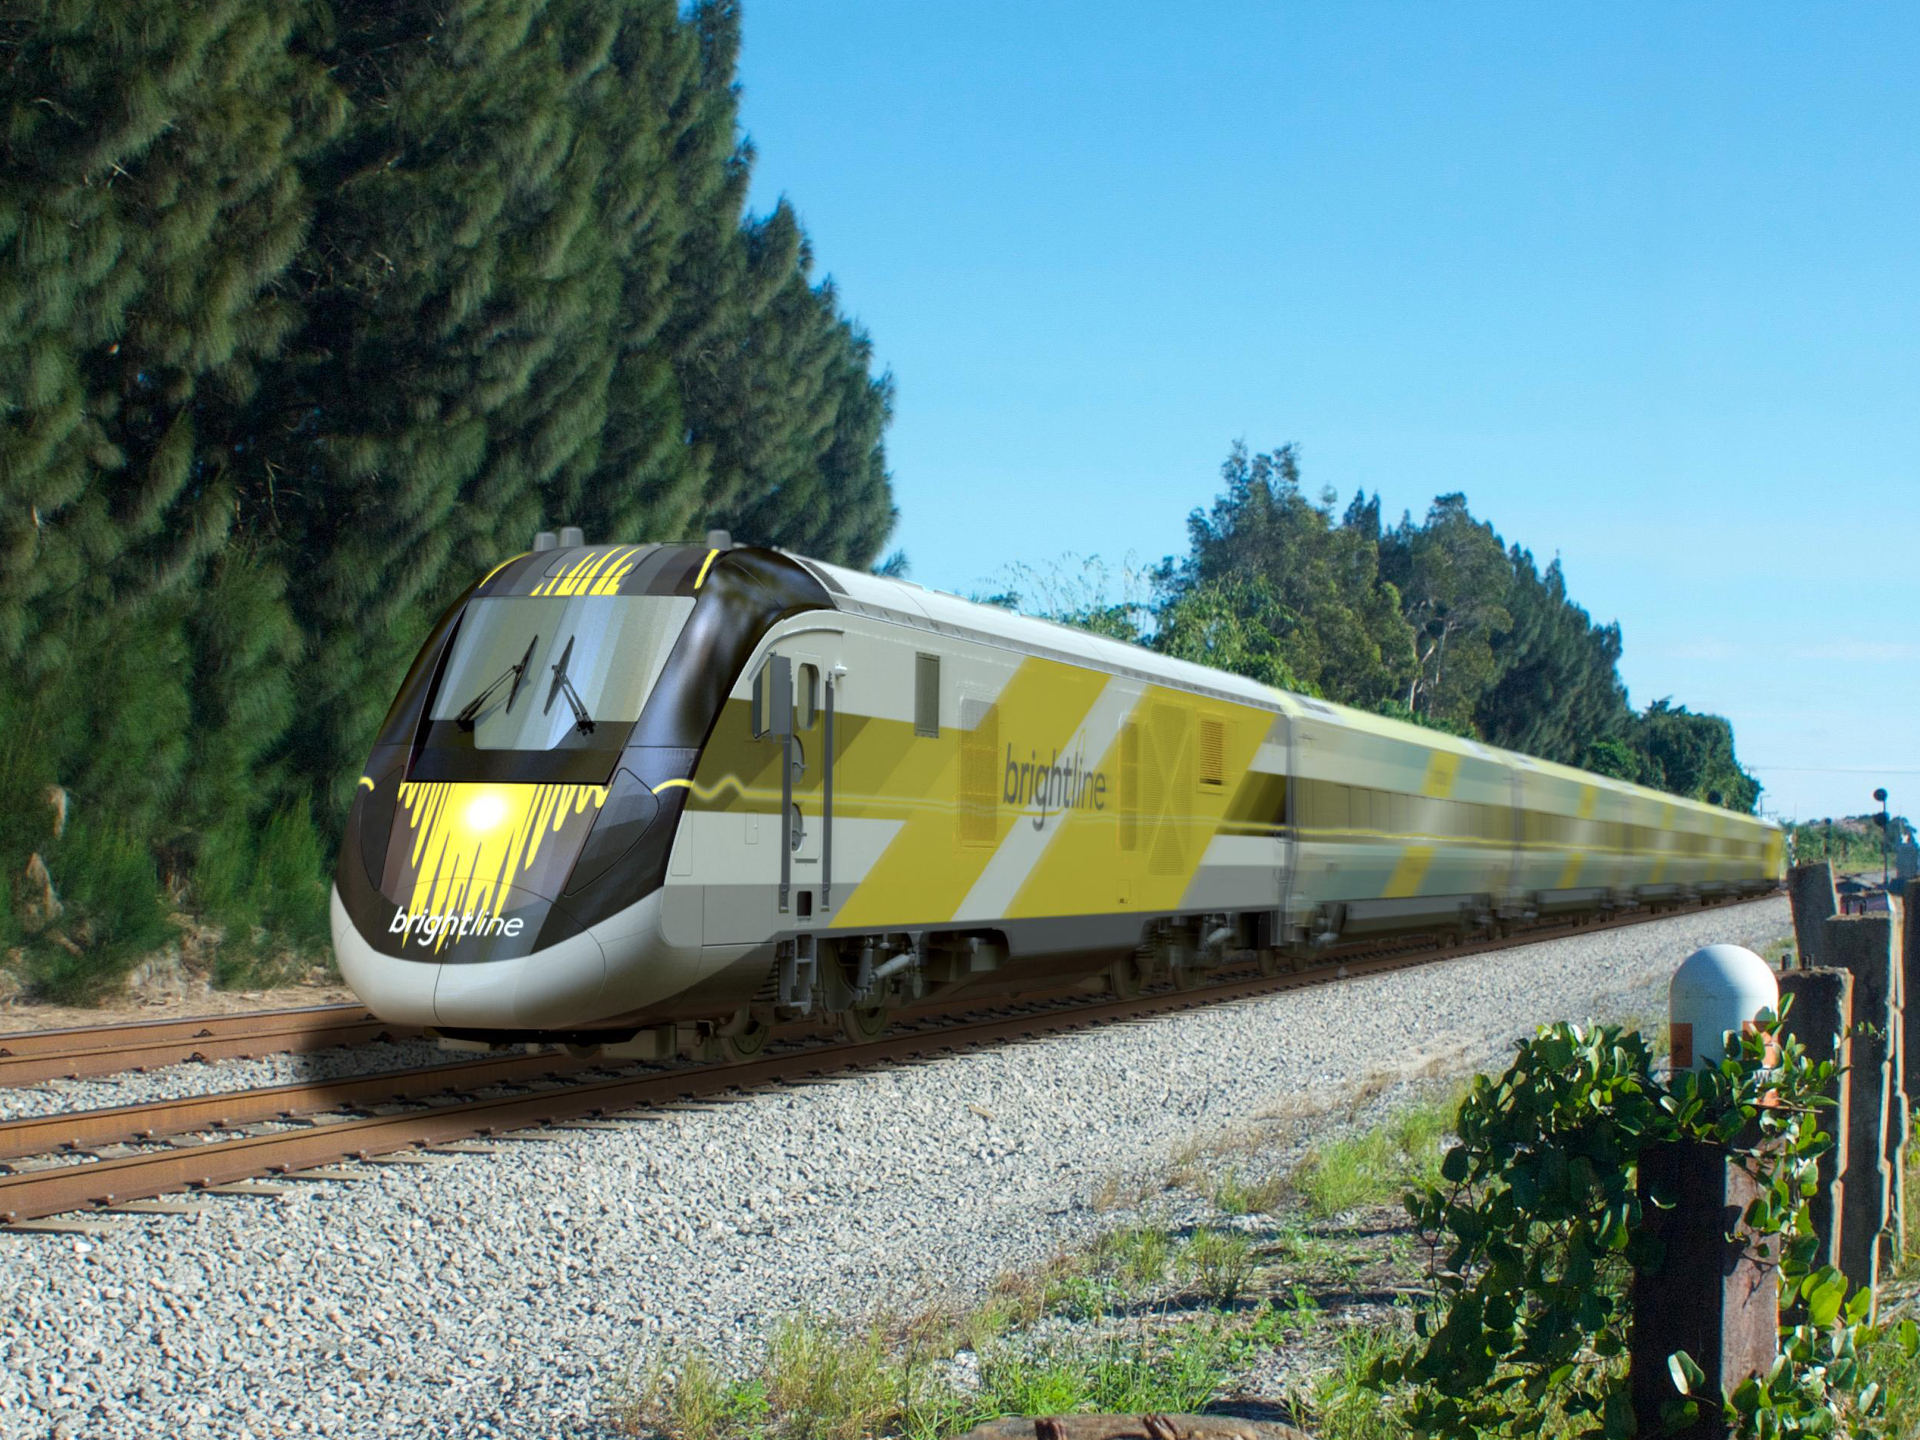 canam eb5 project bright line train